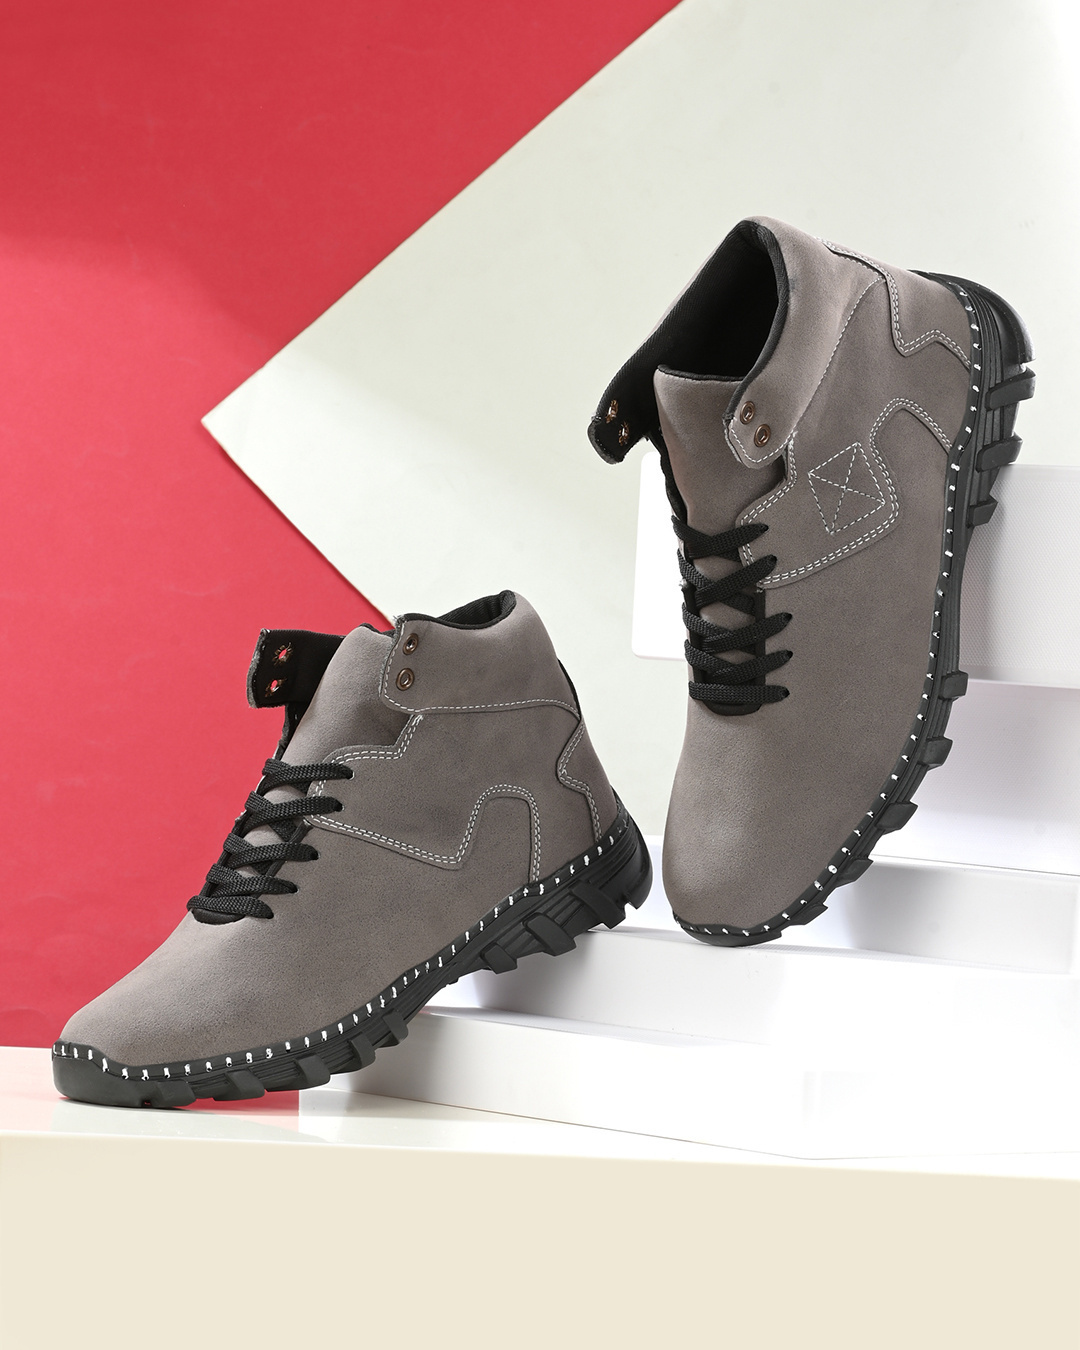 Buy Men's Grey Boots Online in India at Bewakoof